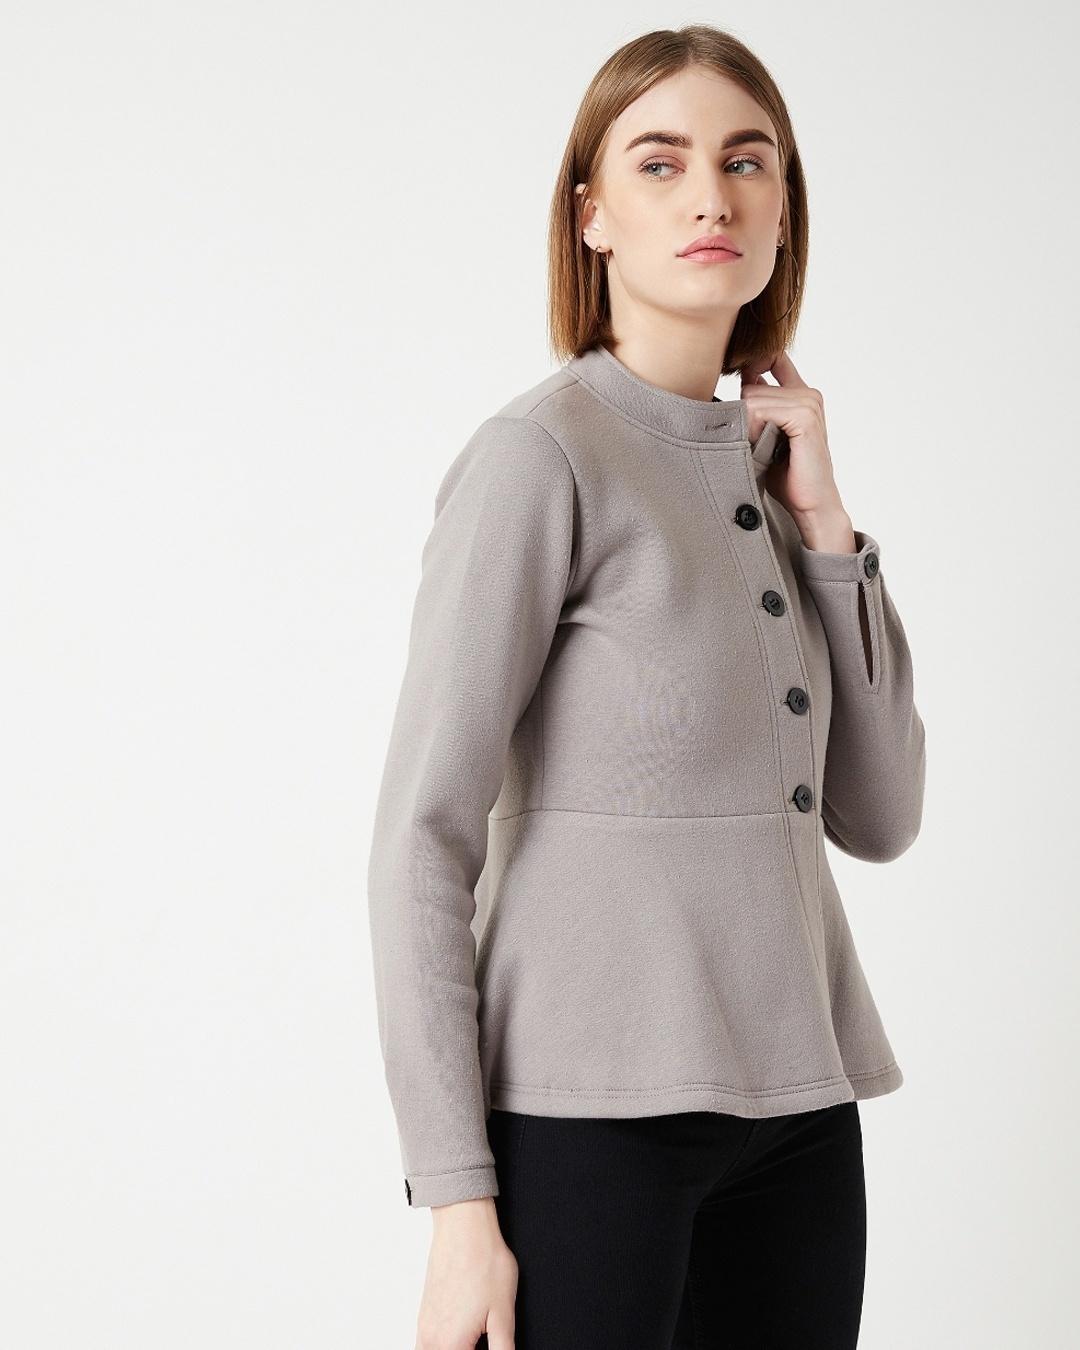 Buy Women's Grey Fleece Jacket for Women Grey Online at Bewakoof